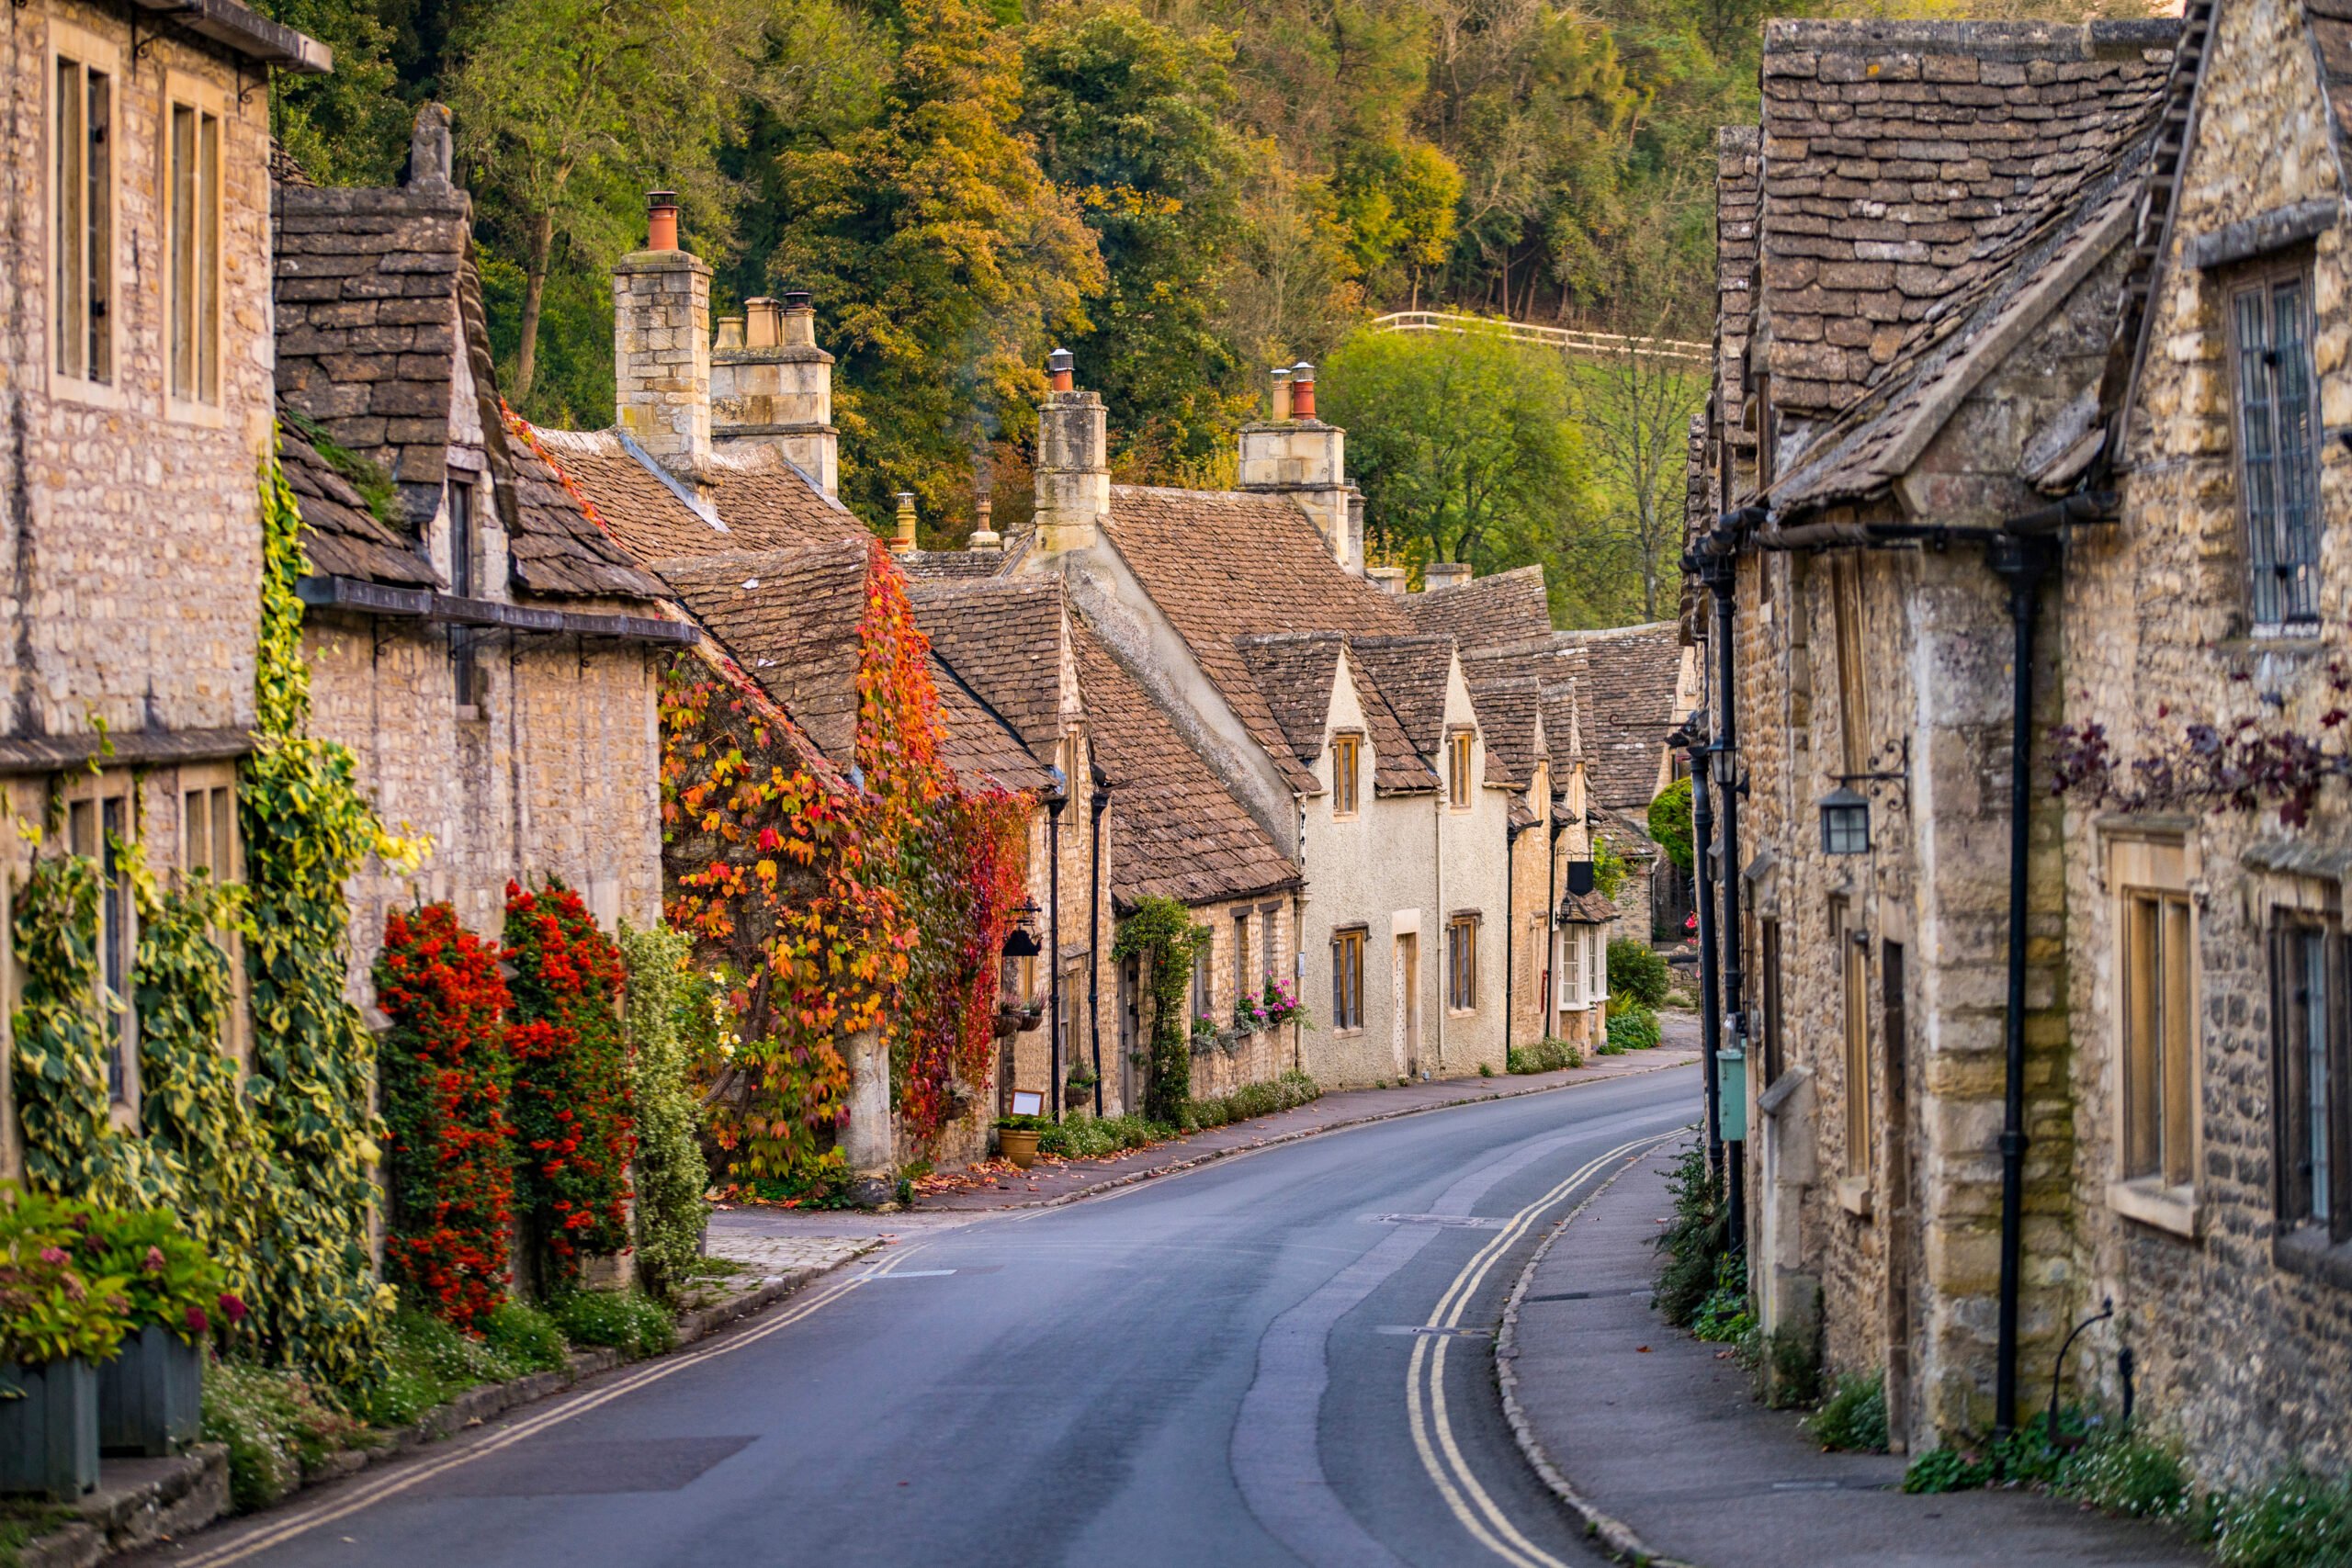 A quaint street in an English village